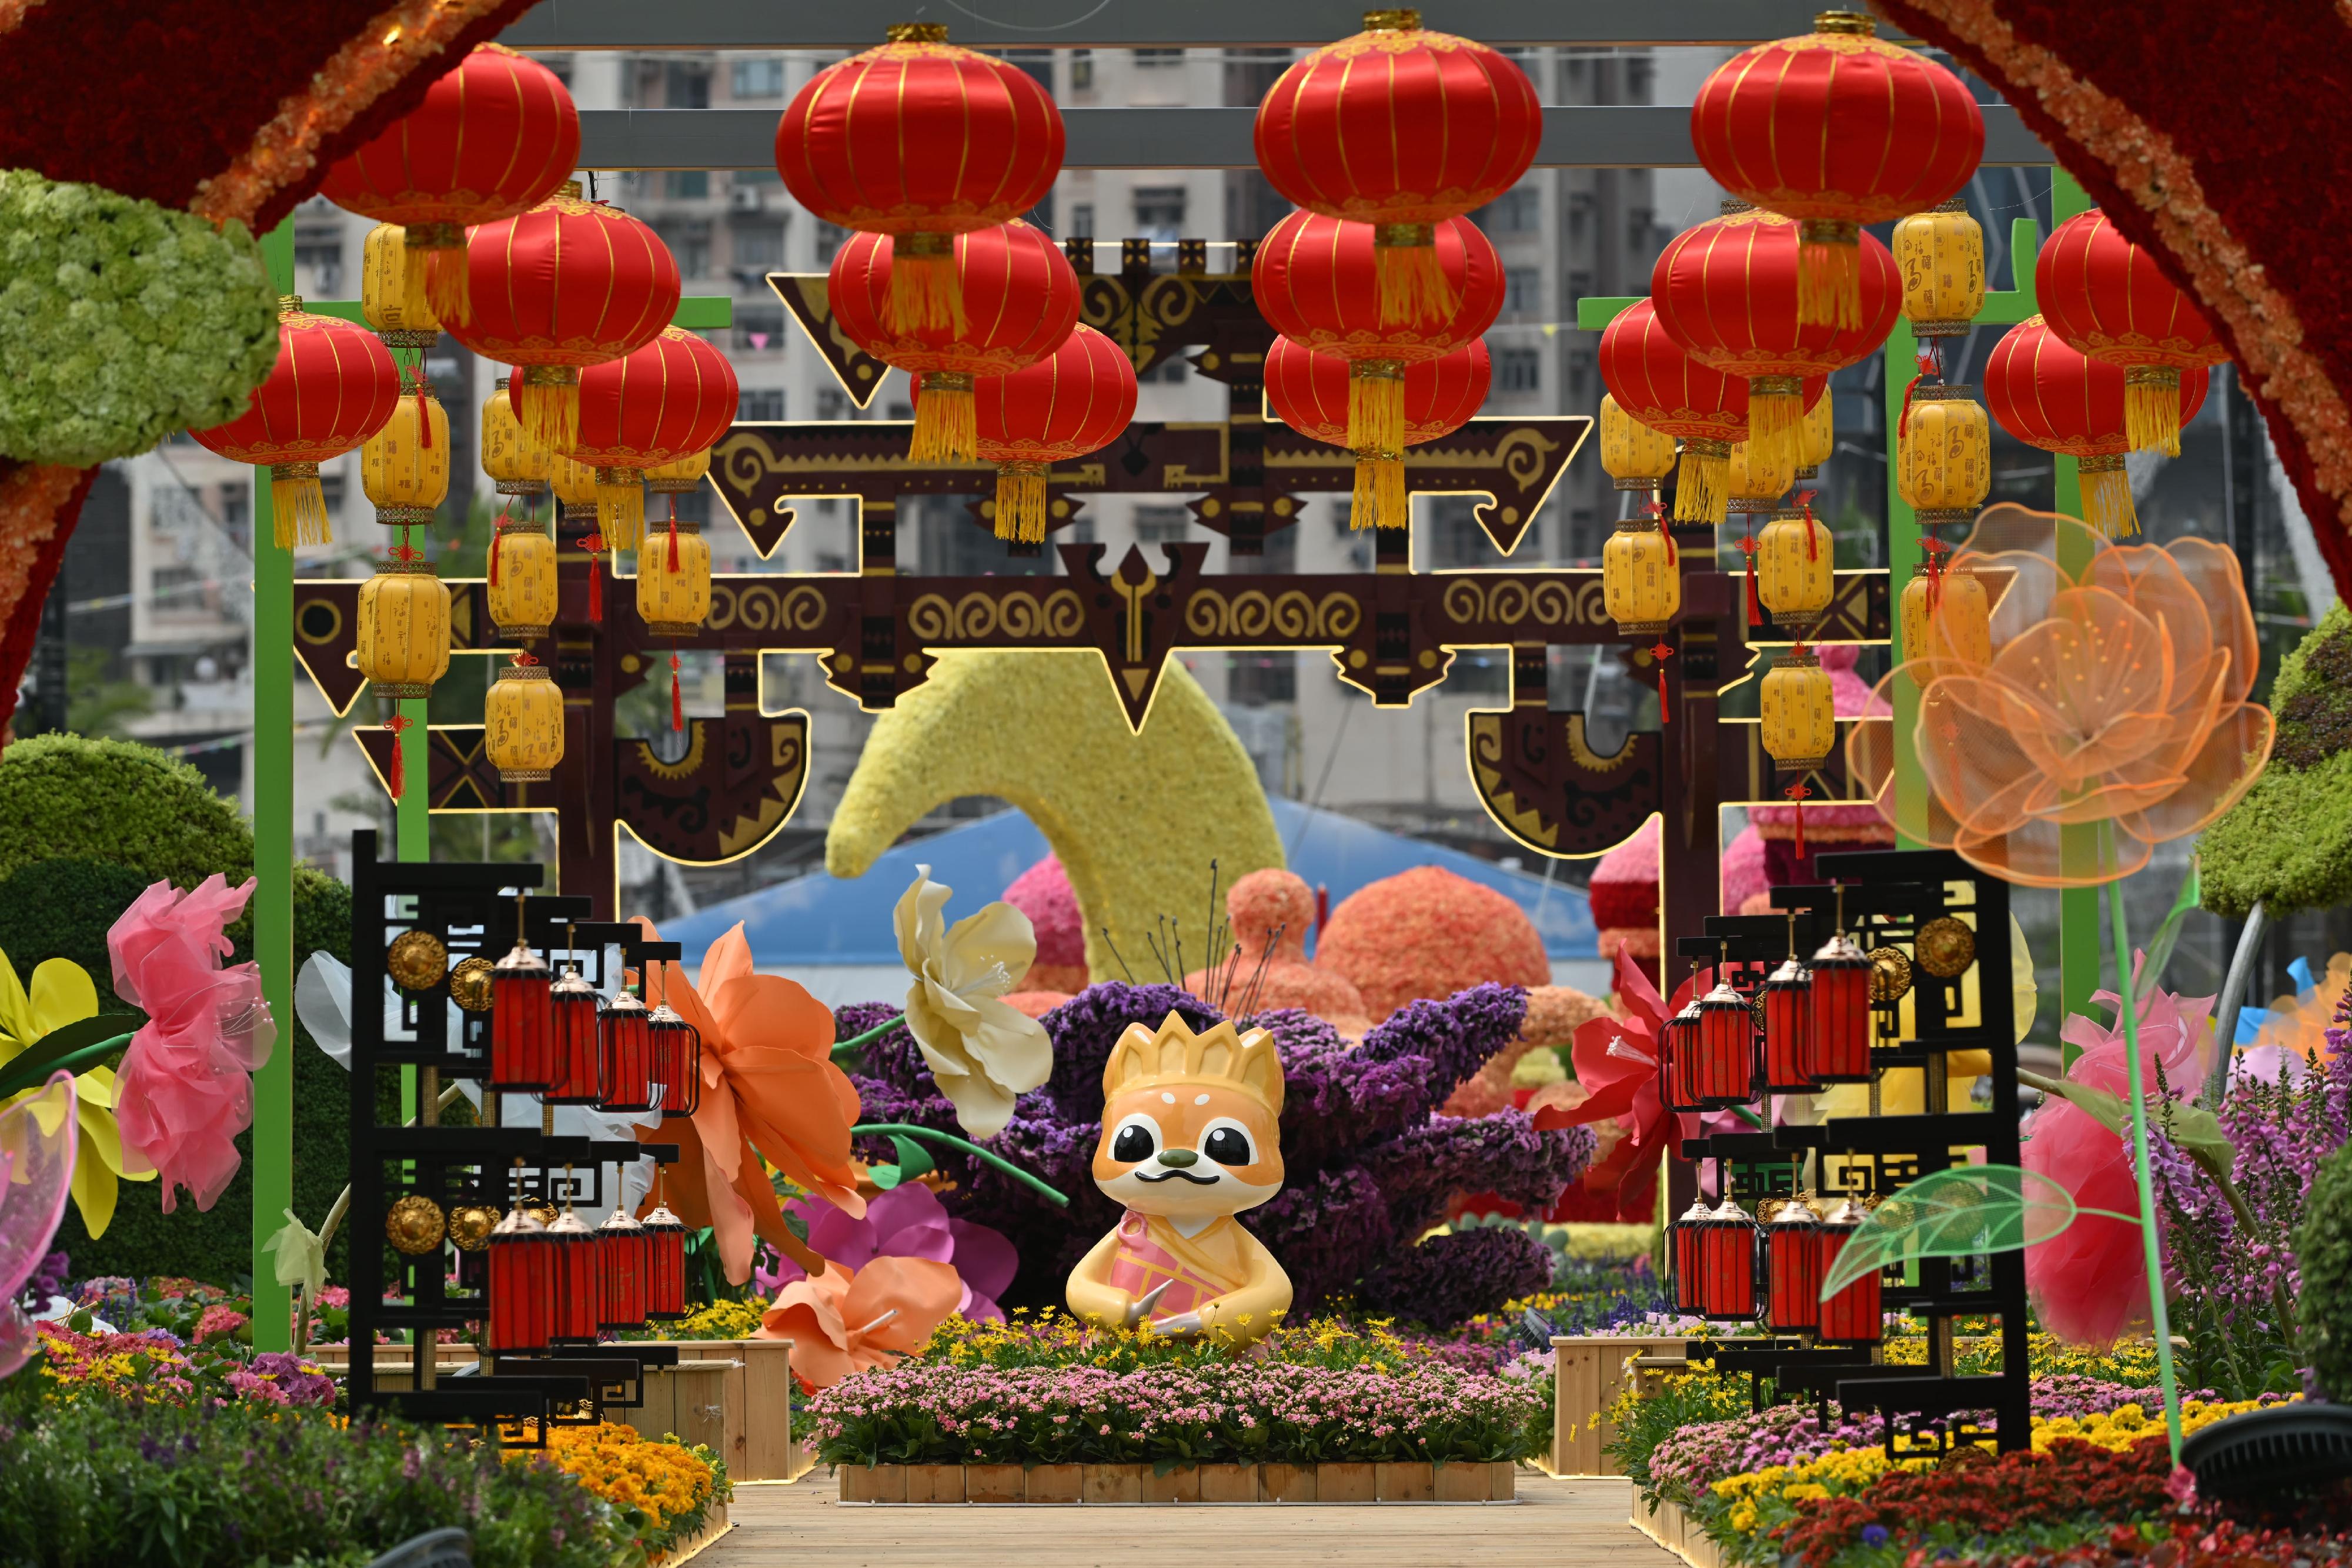 二○二四年香港花卉展览（花展）明日（三月十五日）至三月二十四日在维多利亚公园举行。今年花展的主题花是香彩雀，以「雀跃全城」为主题。花展会场中轴线的园林造景以童话故事为主题，充满童趣和梦幻气息。图示以《西游记》为主题的园林造景。